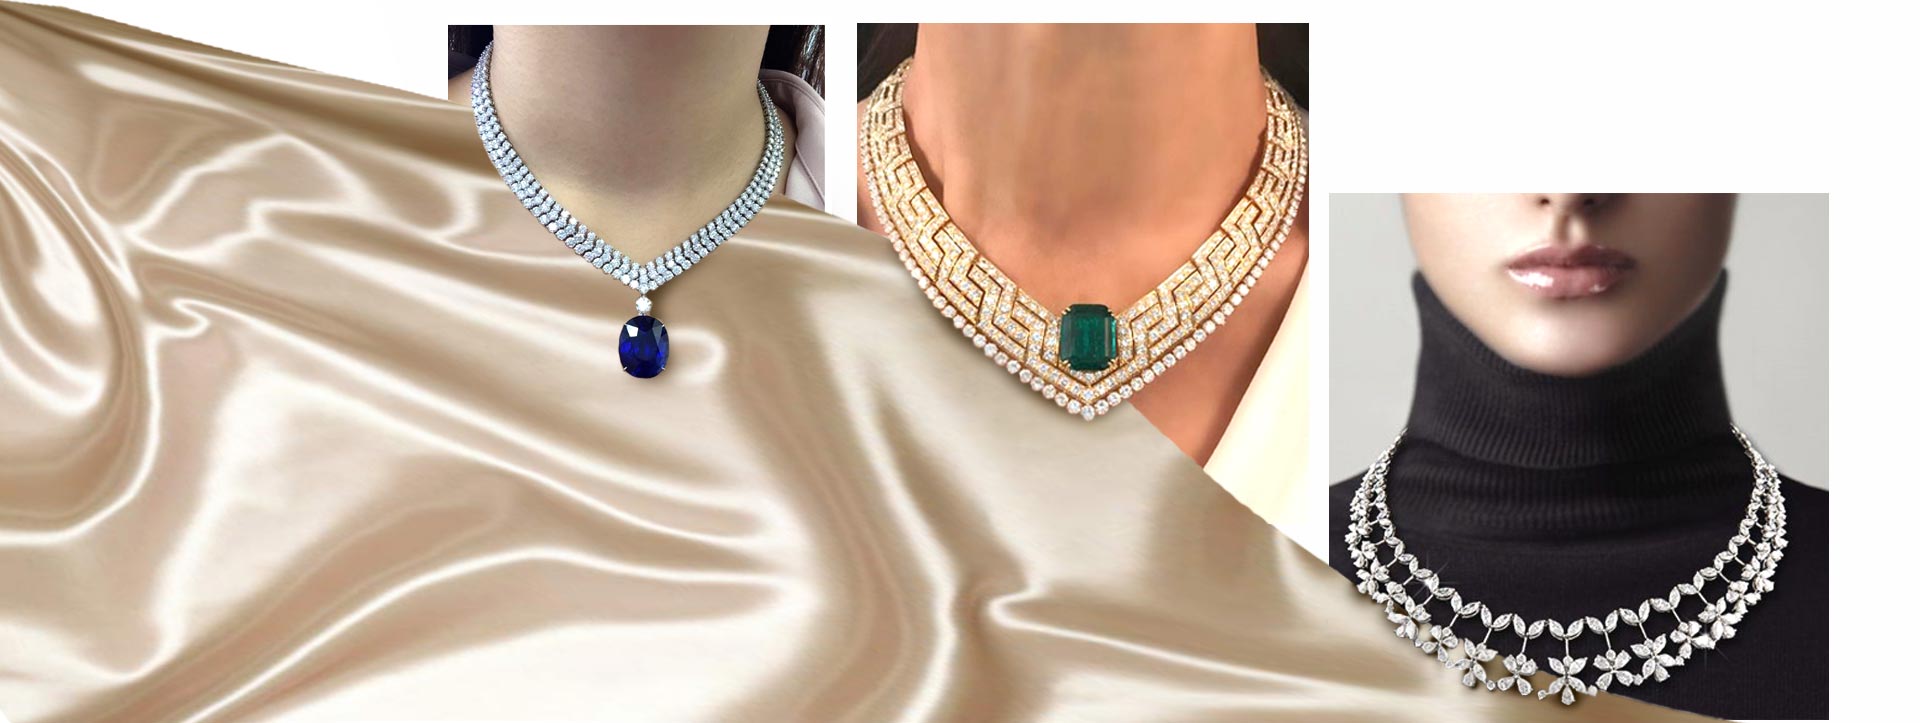 چگونه باید مناسب ترین گردنبند جواهر ساخته شده را انتخاب کرد؟